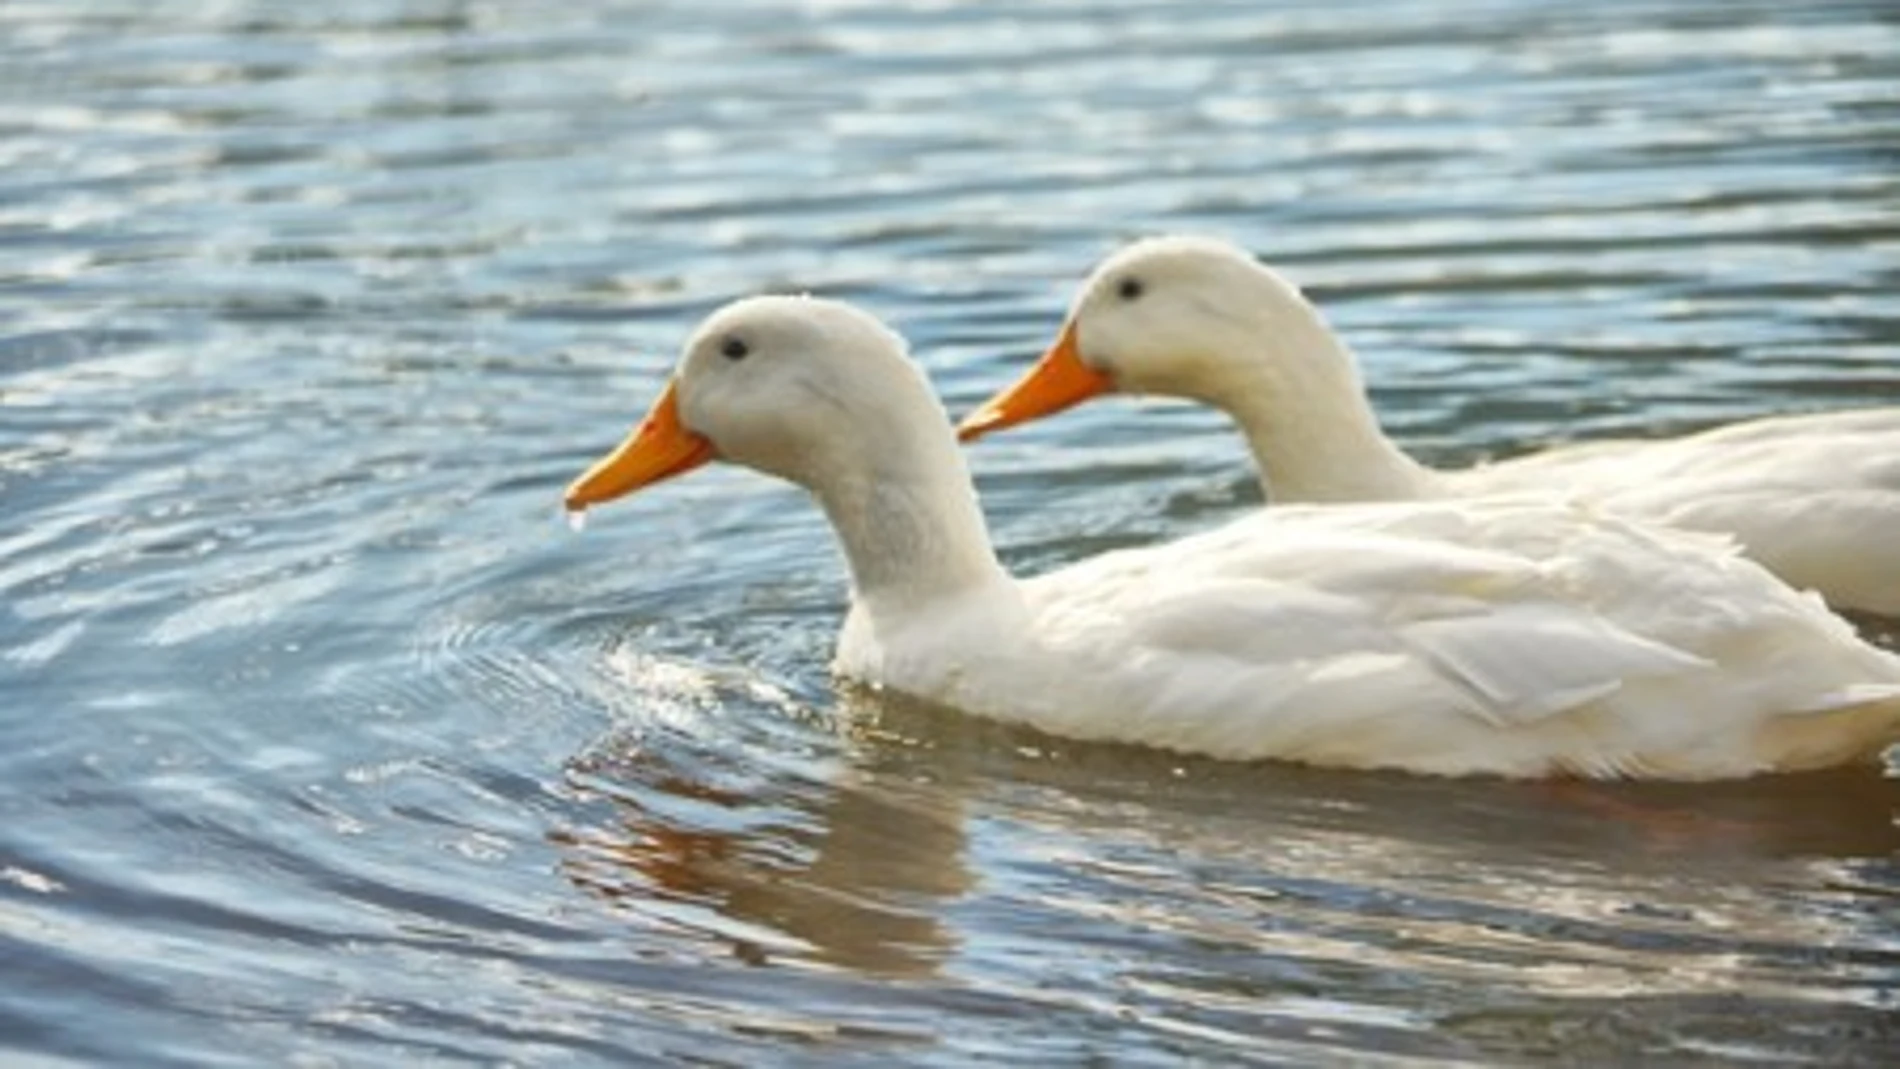 Dos patos nadan en un lago en una imagen de archivo